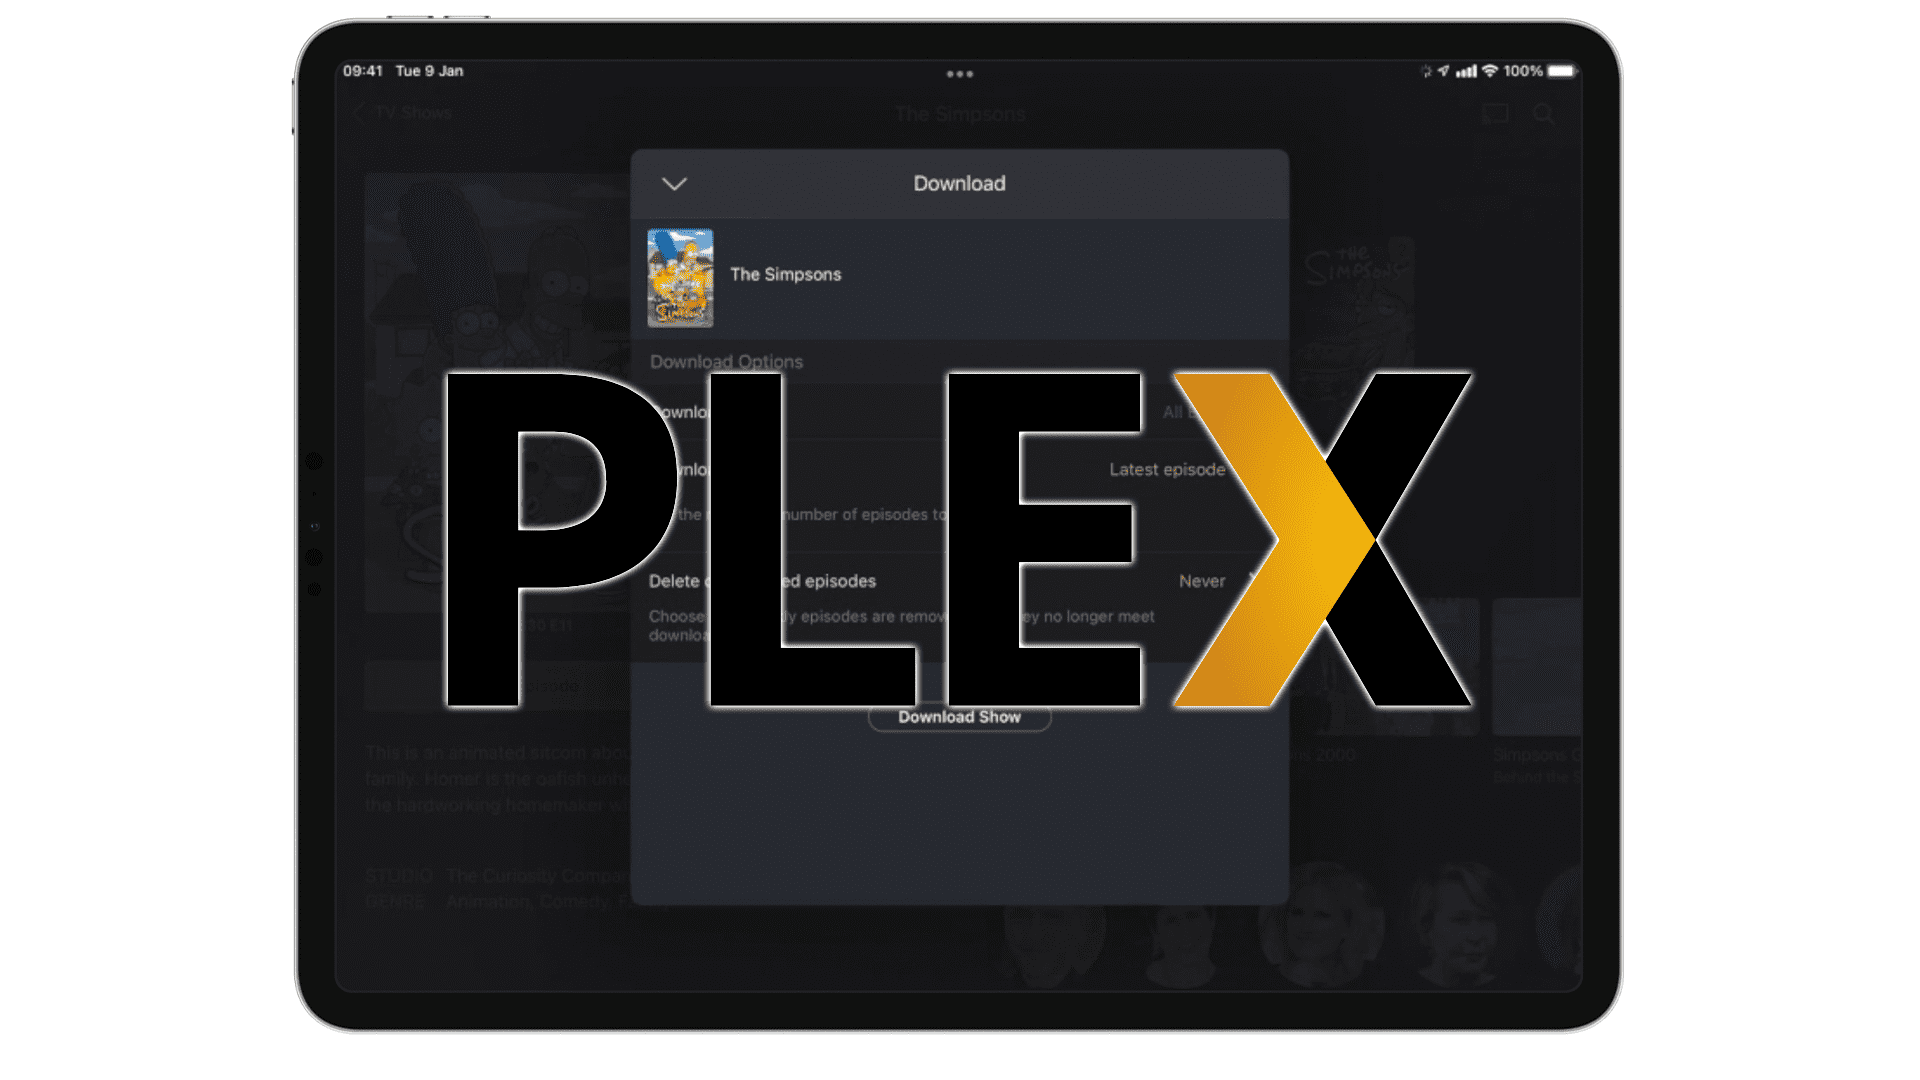 Tính năng Crappy Sync của Plex được đại tu lớn, cộng với một cái tên mới